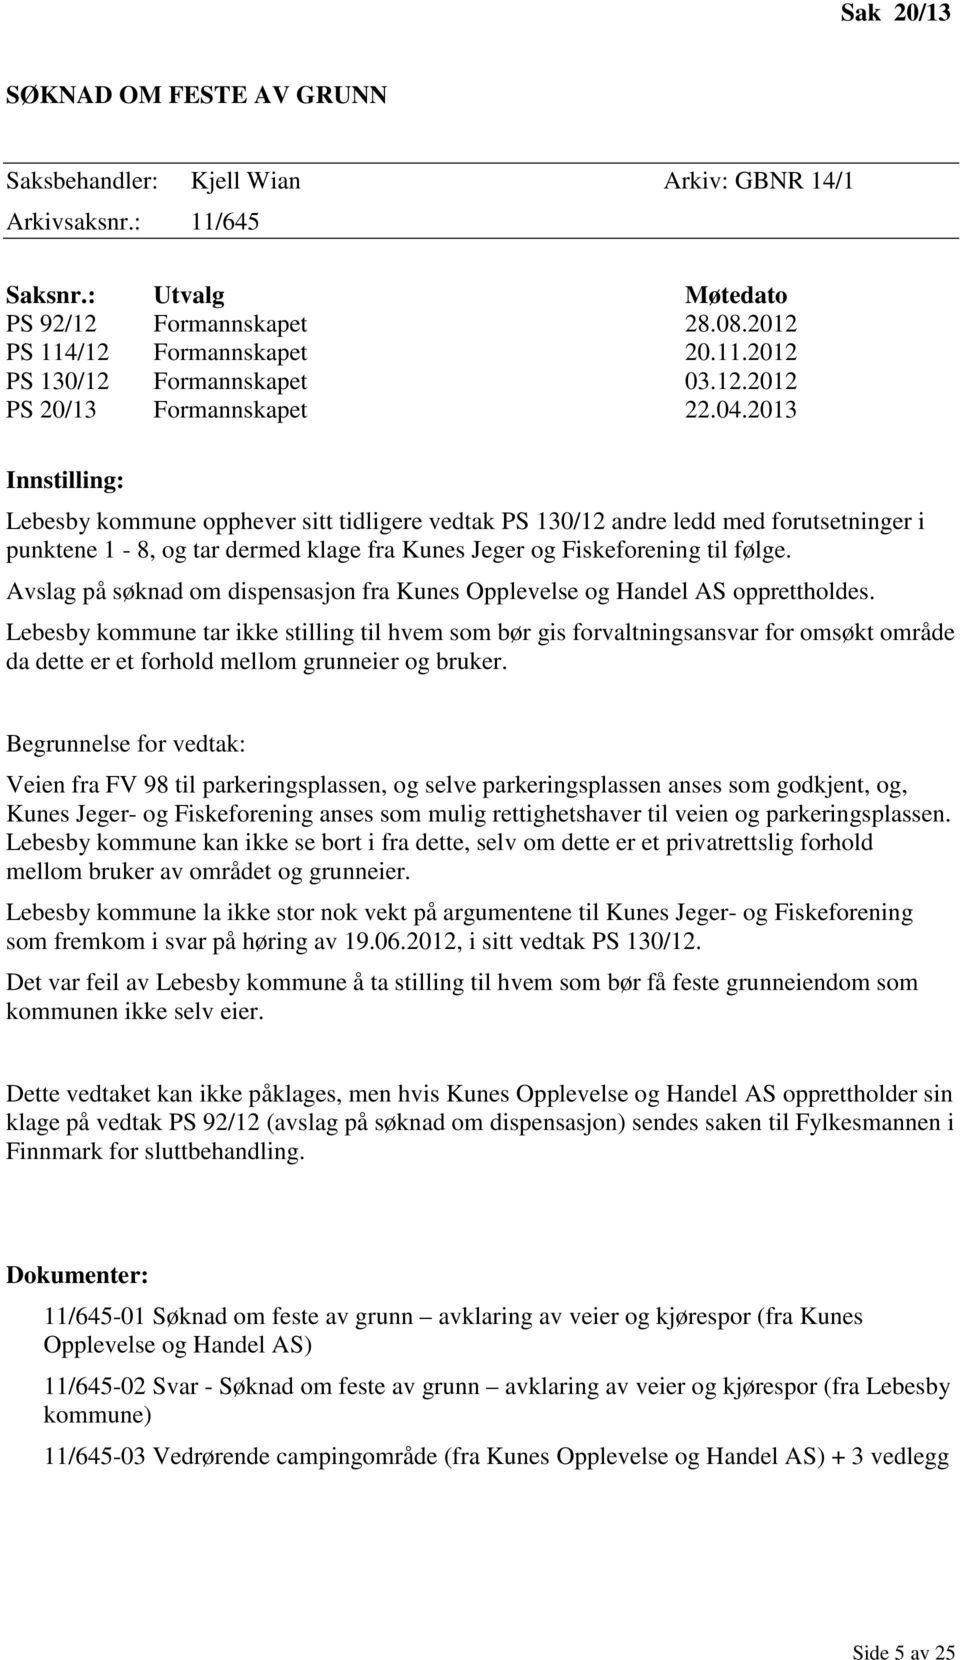 2013 Innstilling: Lebesby kommune opphever sitt tidligere vedtak PS 130/12 andre ledd med forutsetninger i punktene 1-8, og tar dermed klage fra Kunes Jeger og Fiskeforening til følge.